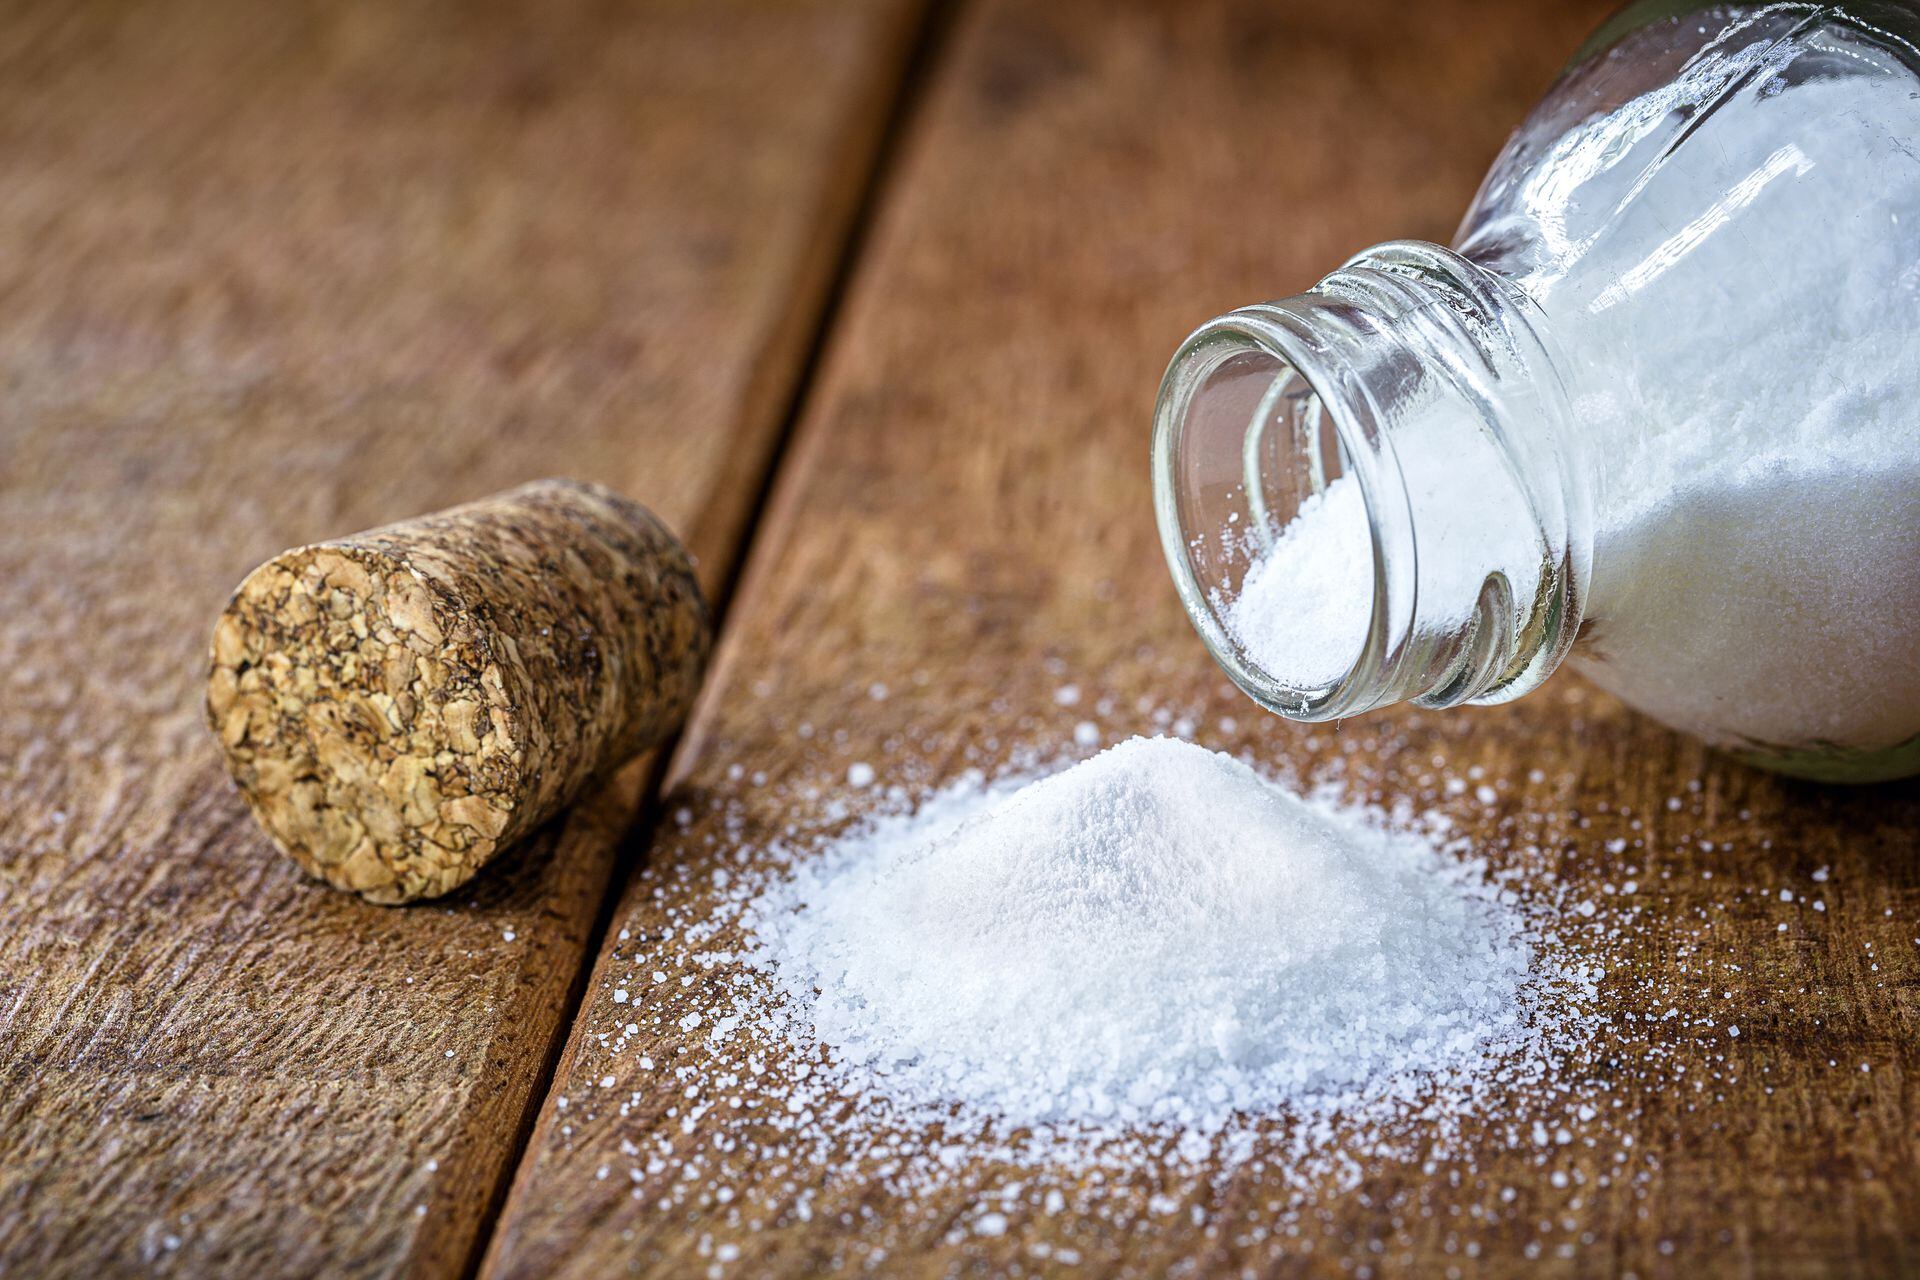 Bicarbonato de sodio: cinco usos fantásticos en casa para limpiar y  desinfectar - Gente - Cultura 